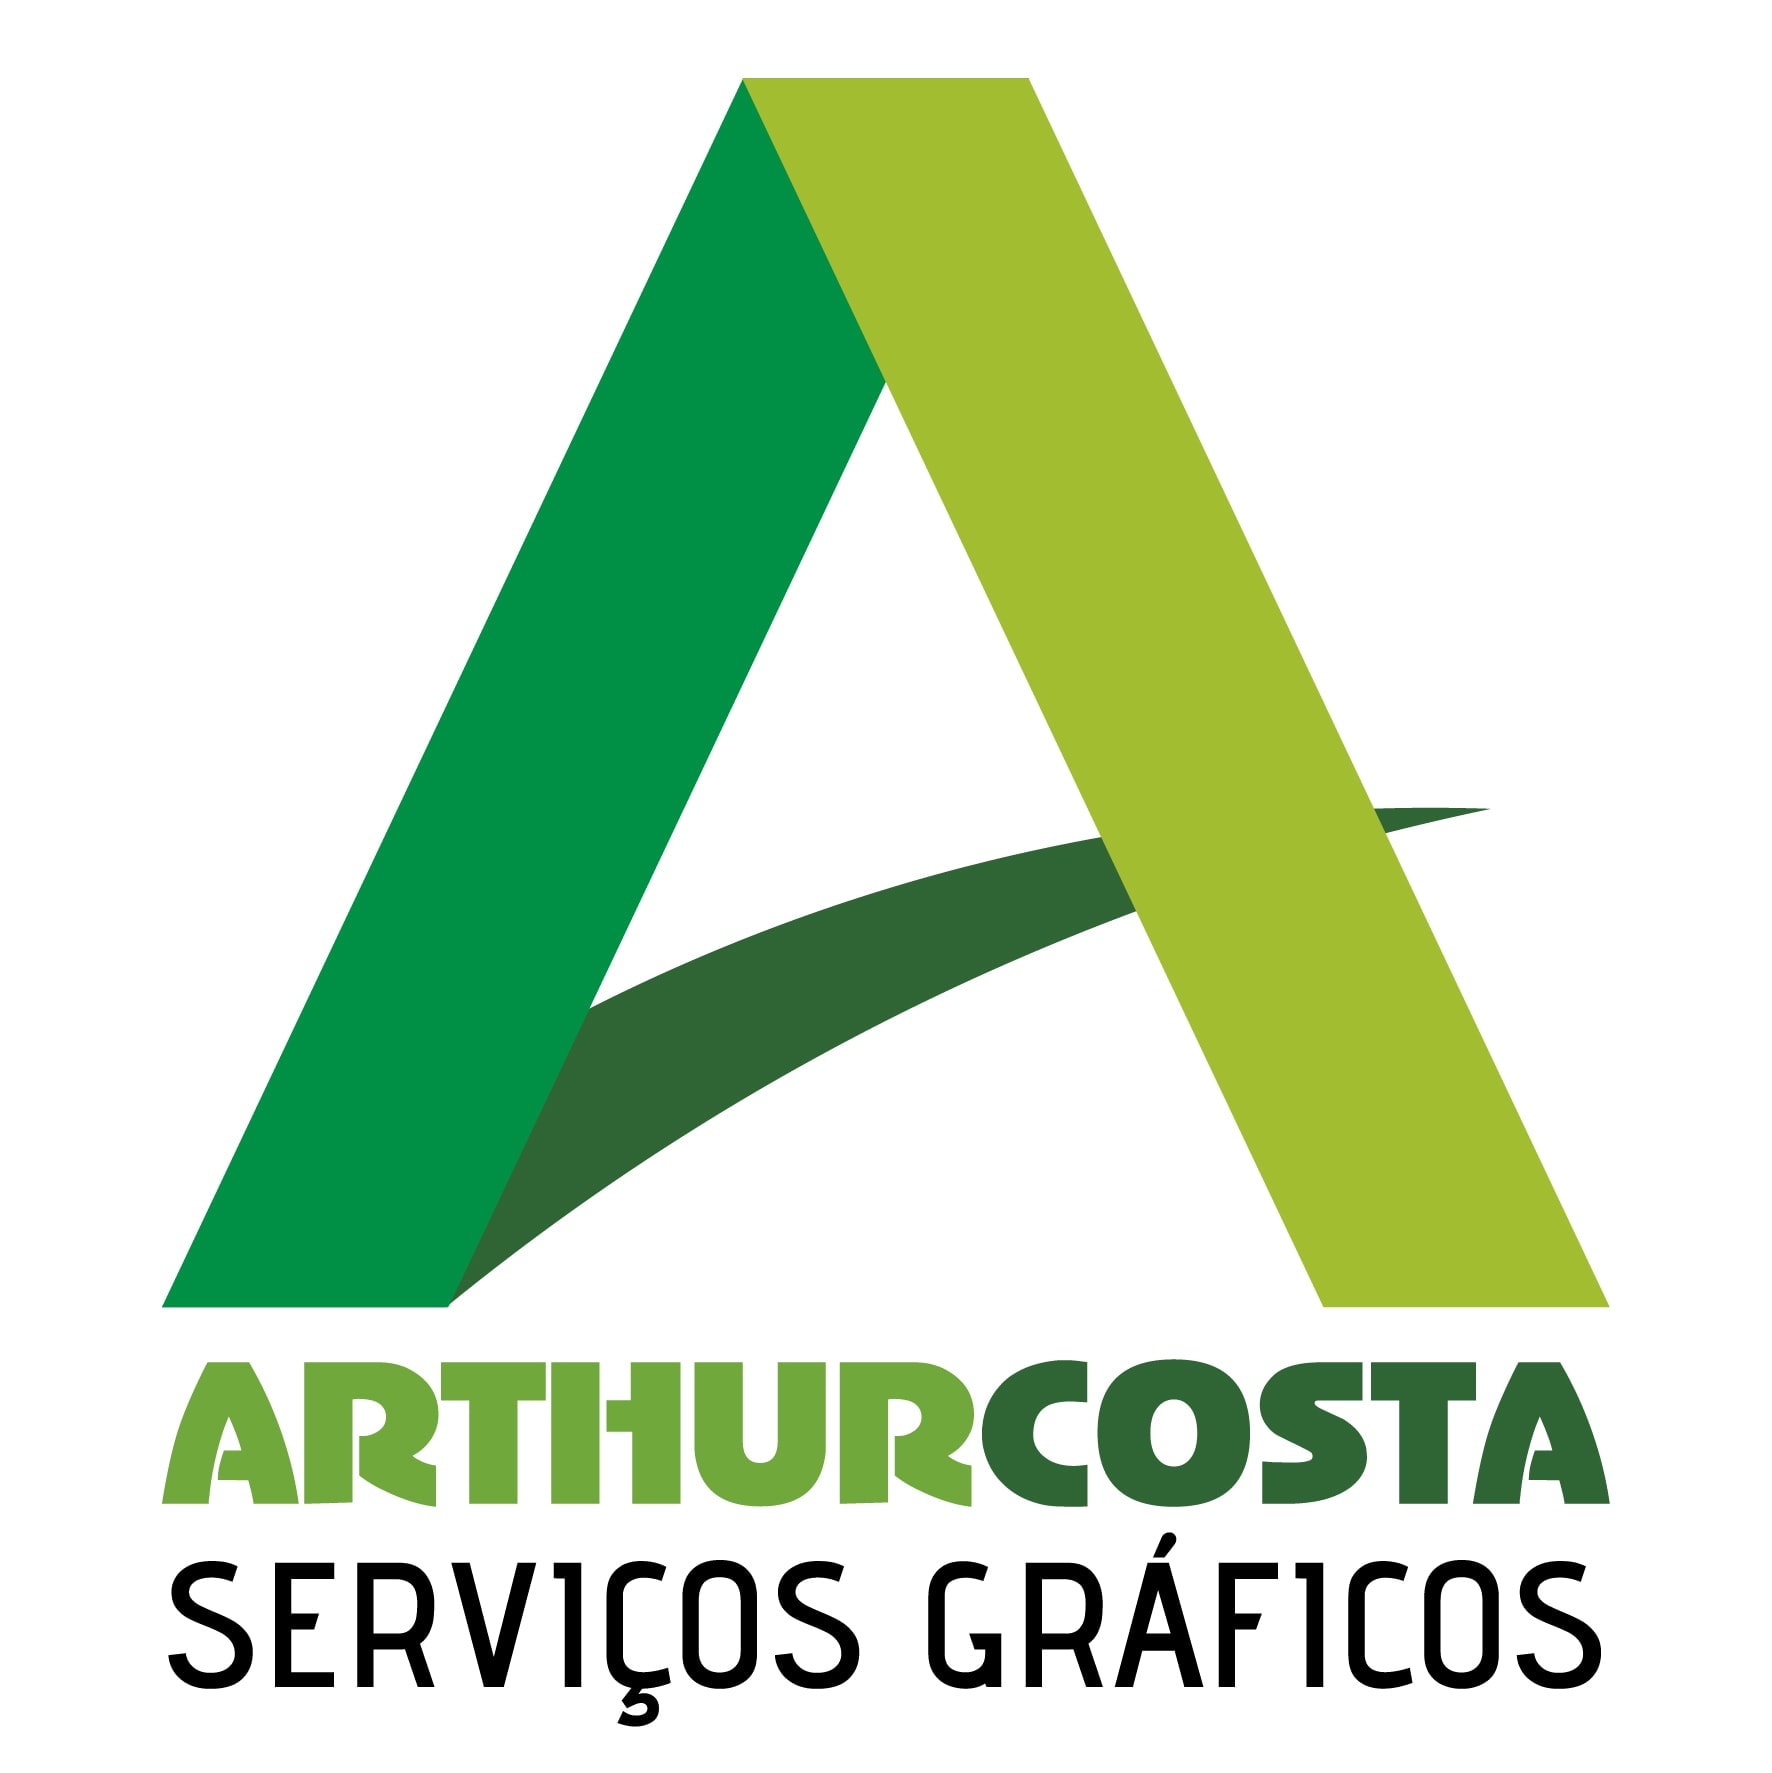 Arthur Costa SG